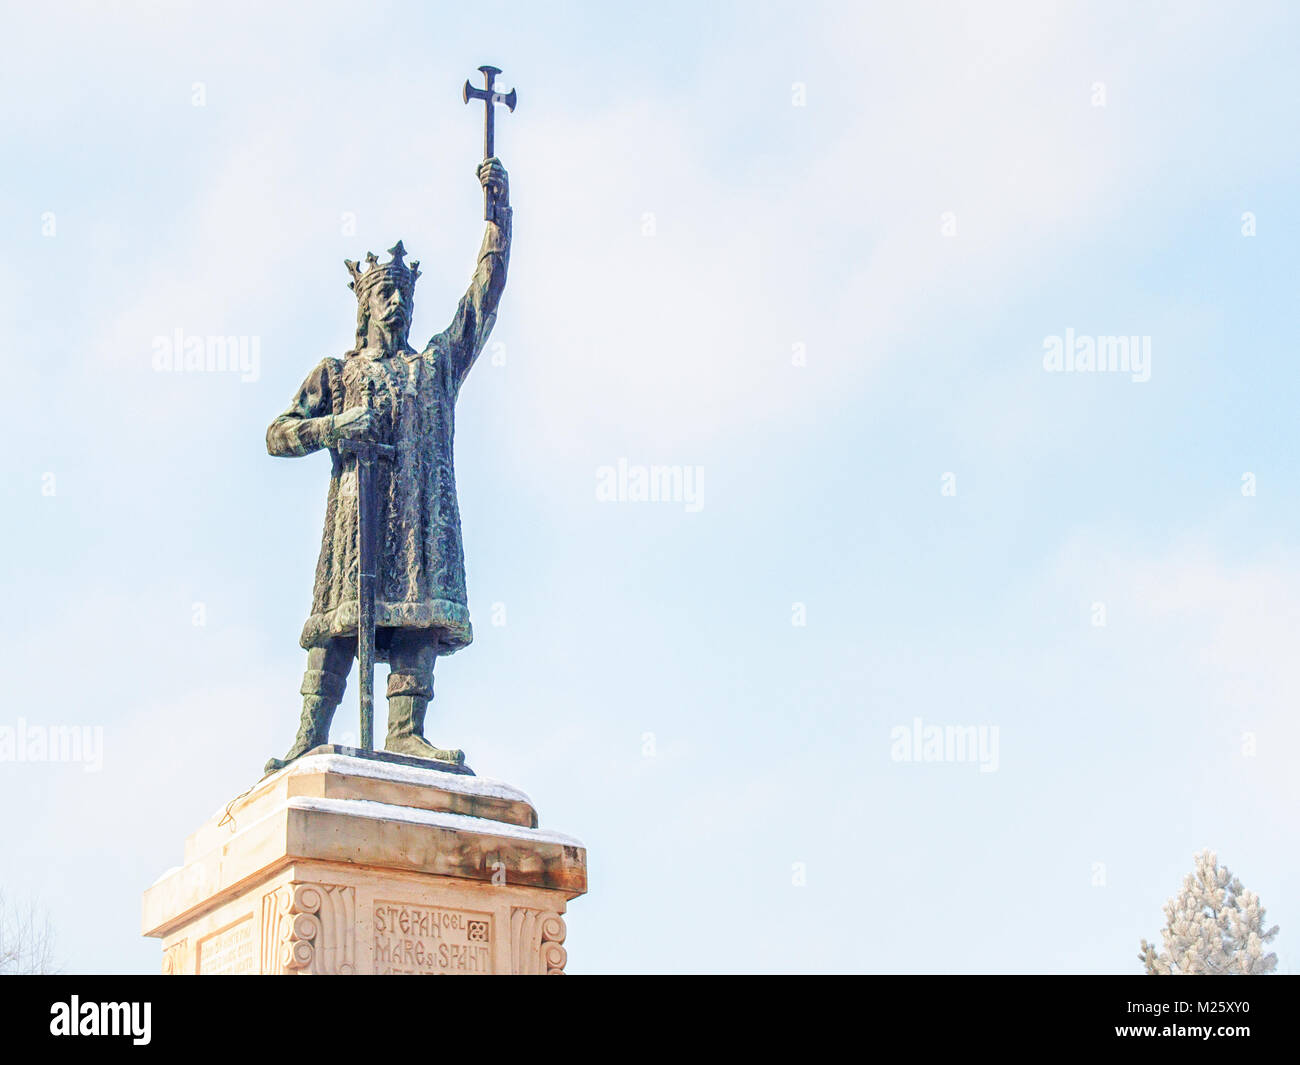 Etienne le Grand Monument dans le centre de Chisinau, Moldova. (Inscription en languаge roumaine : Etienne le Grand) Banque D'Images